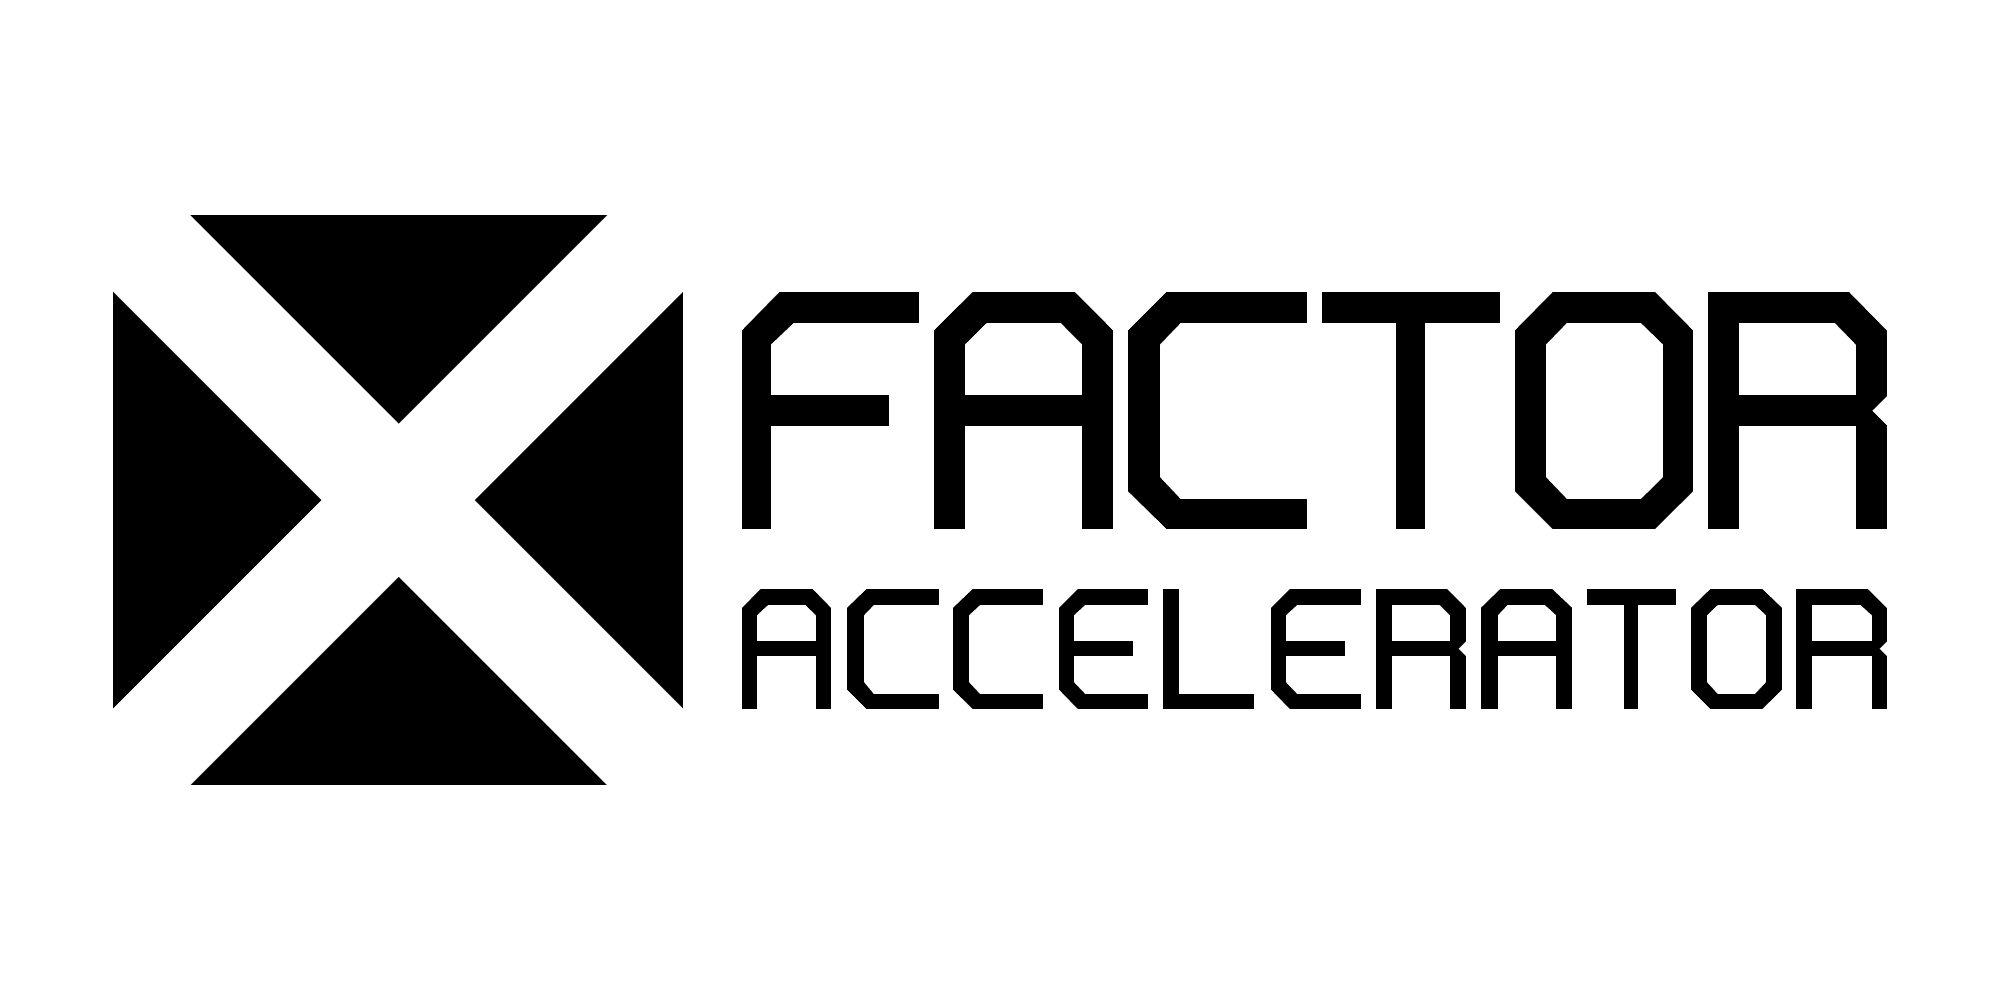 X Factor Accelerator logo